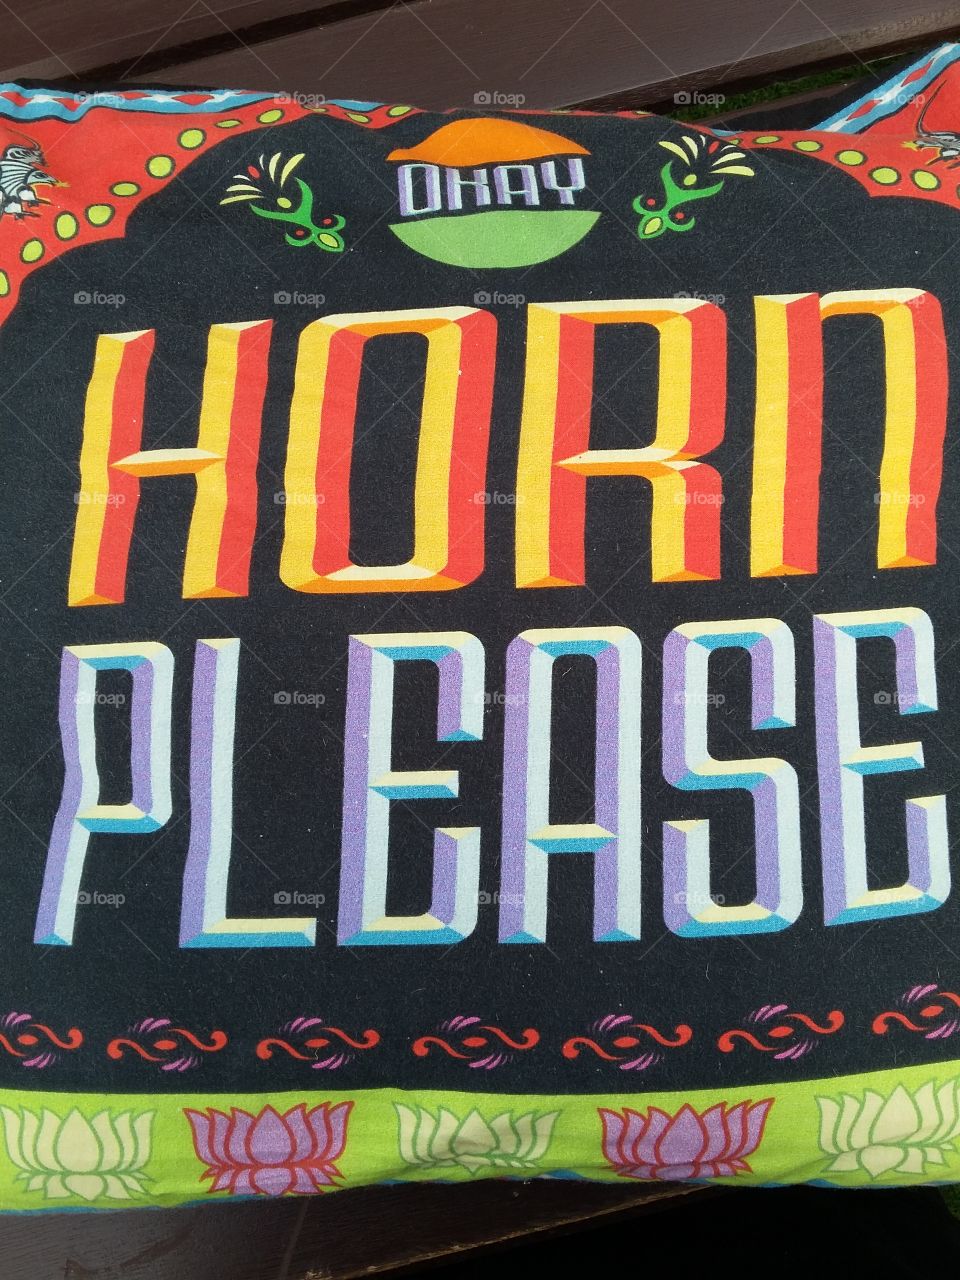 horn please